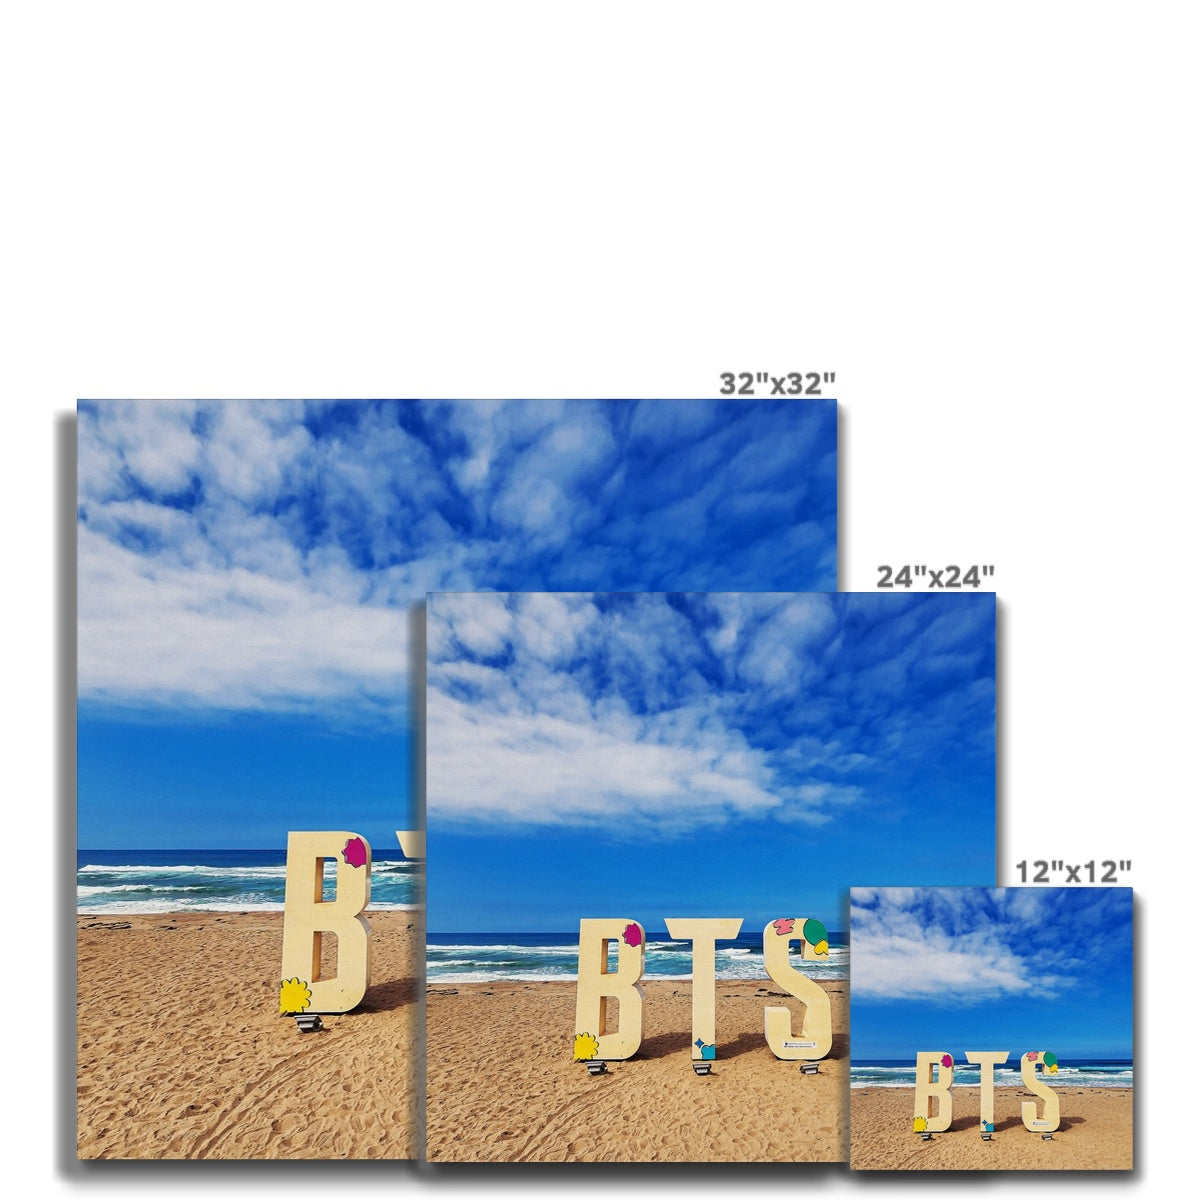 BTS Butter shoot Location Beach Canvas